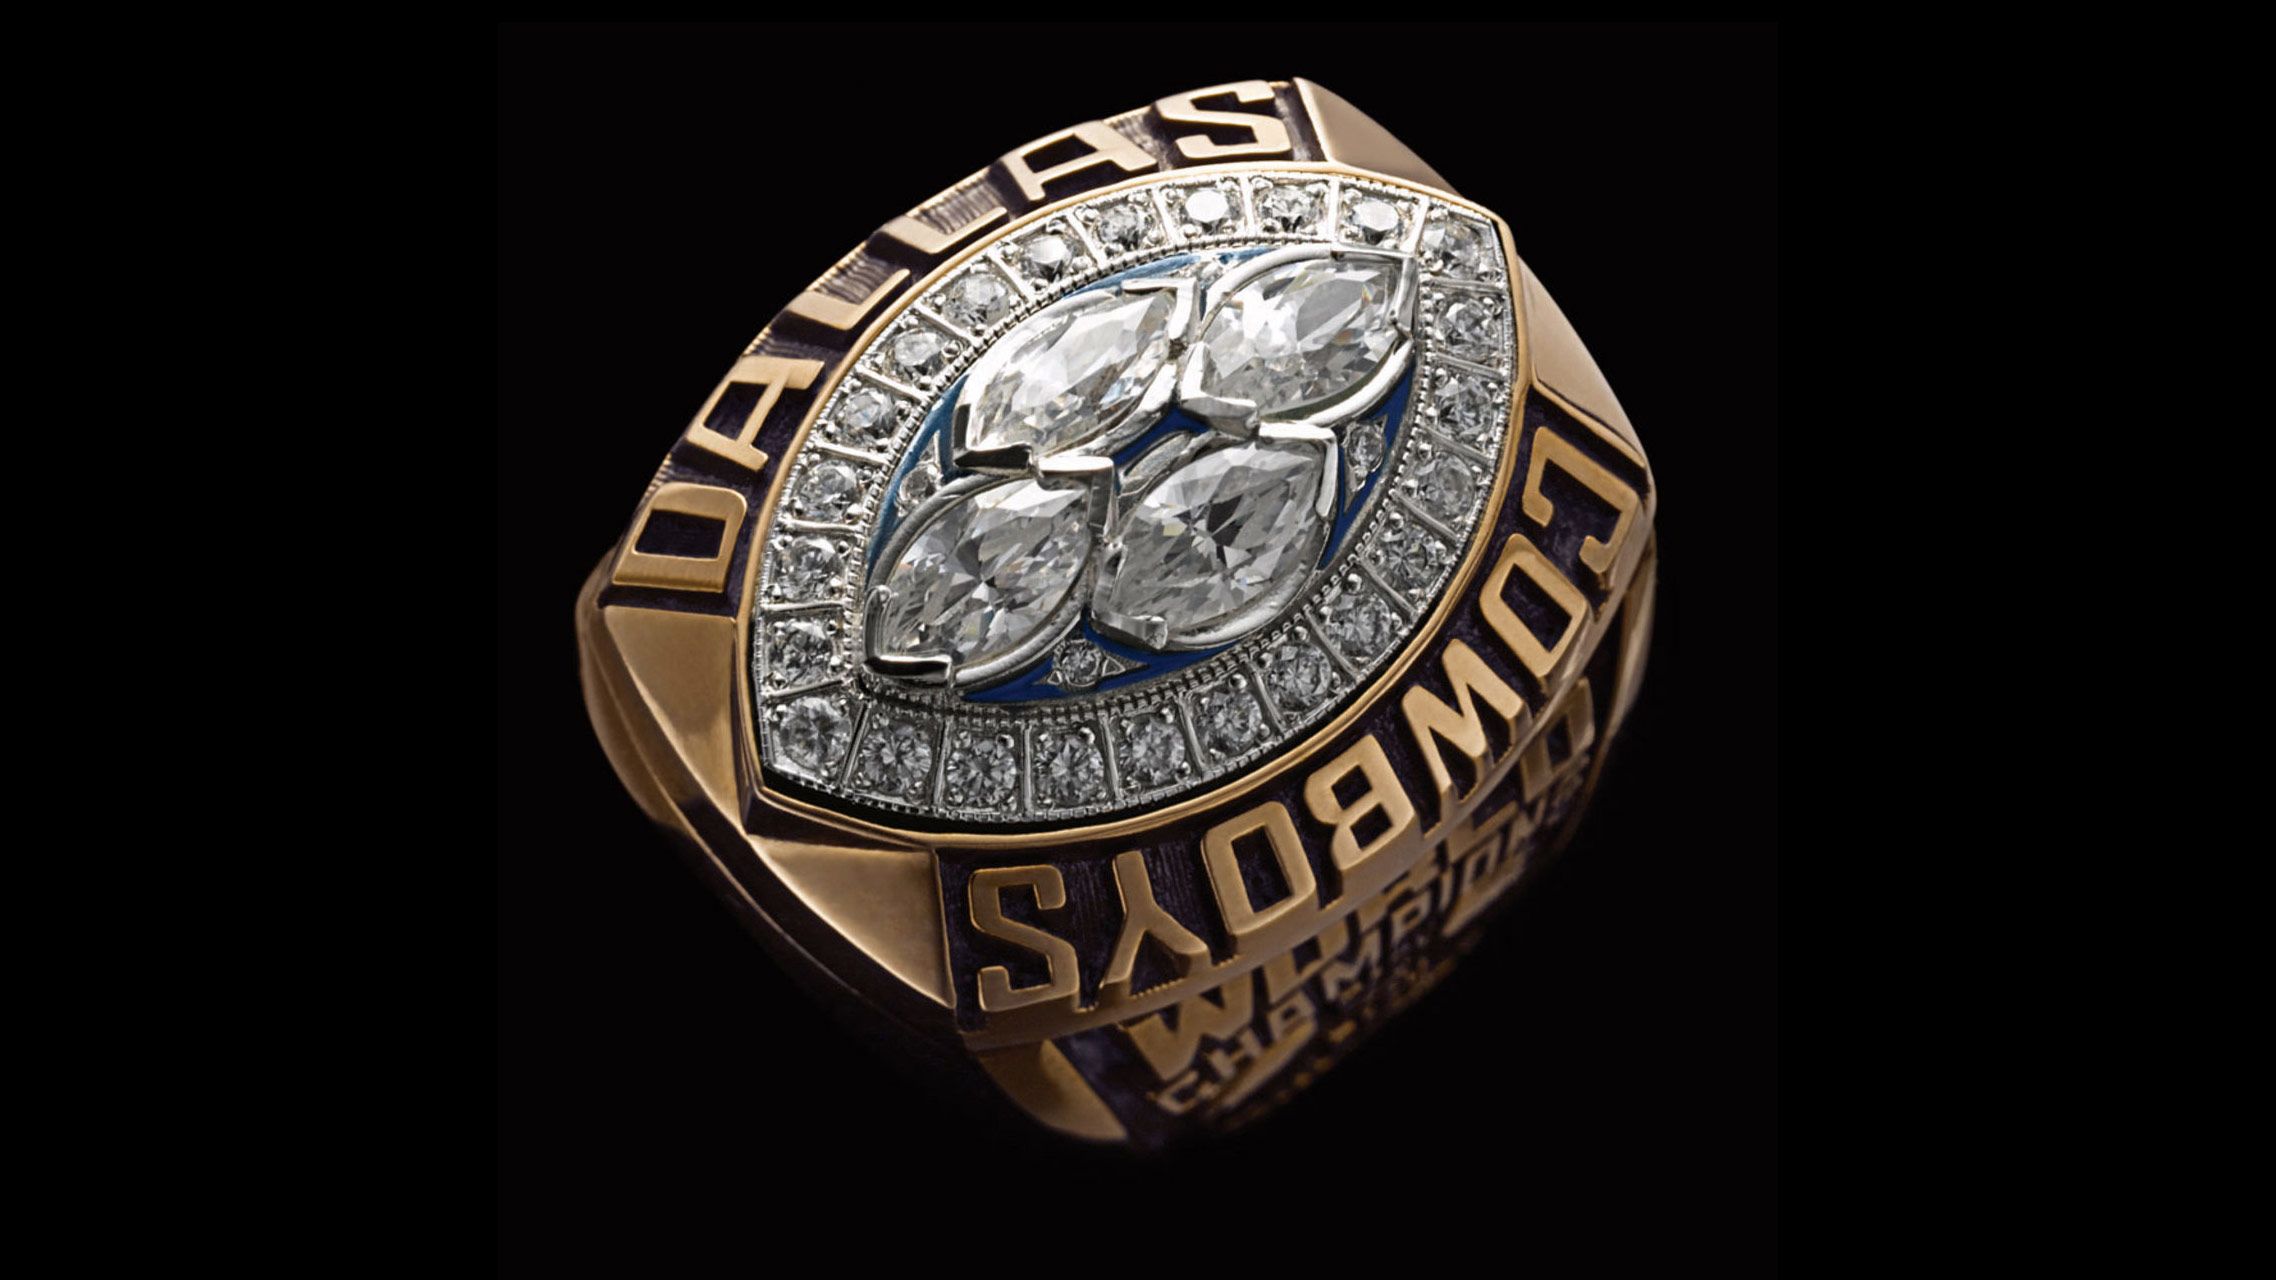 49ers super bowl rings real